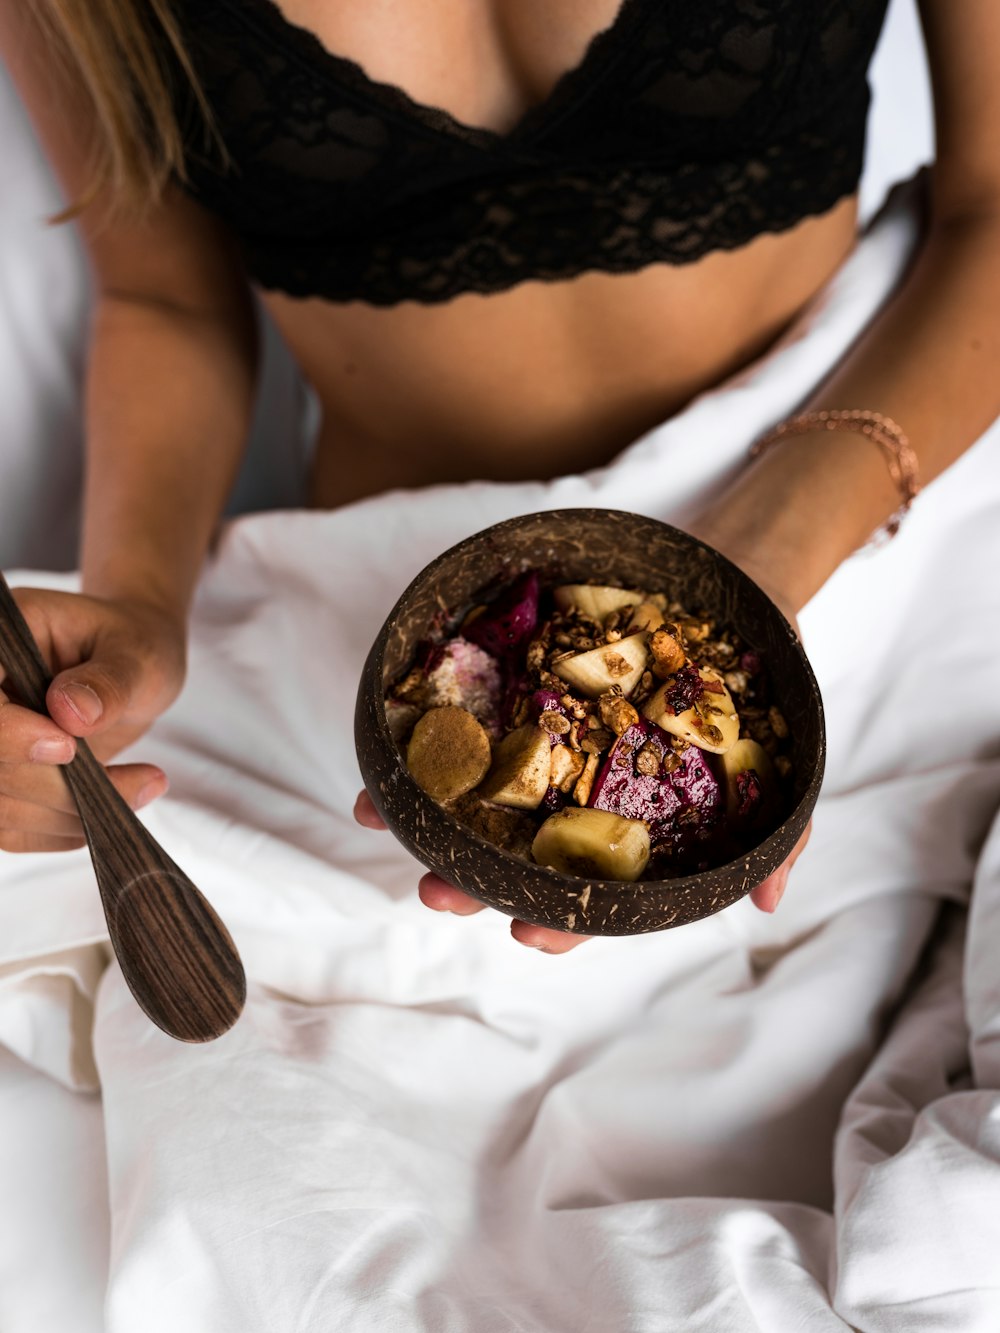 geschnittene Früchte auf Kokosnussschalenschale auf Frauenhand im Bett